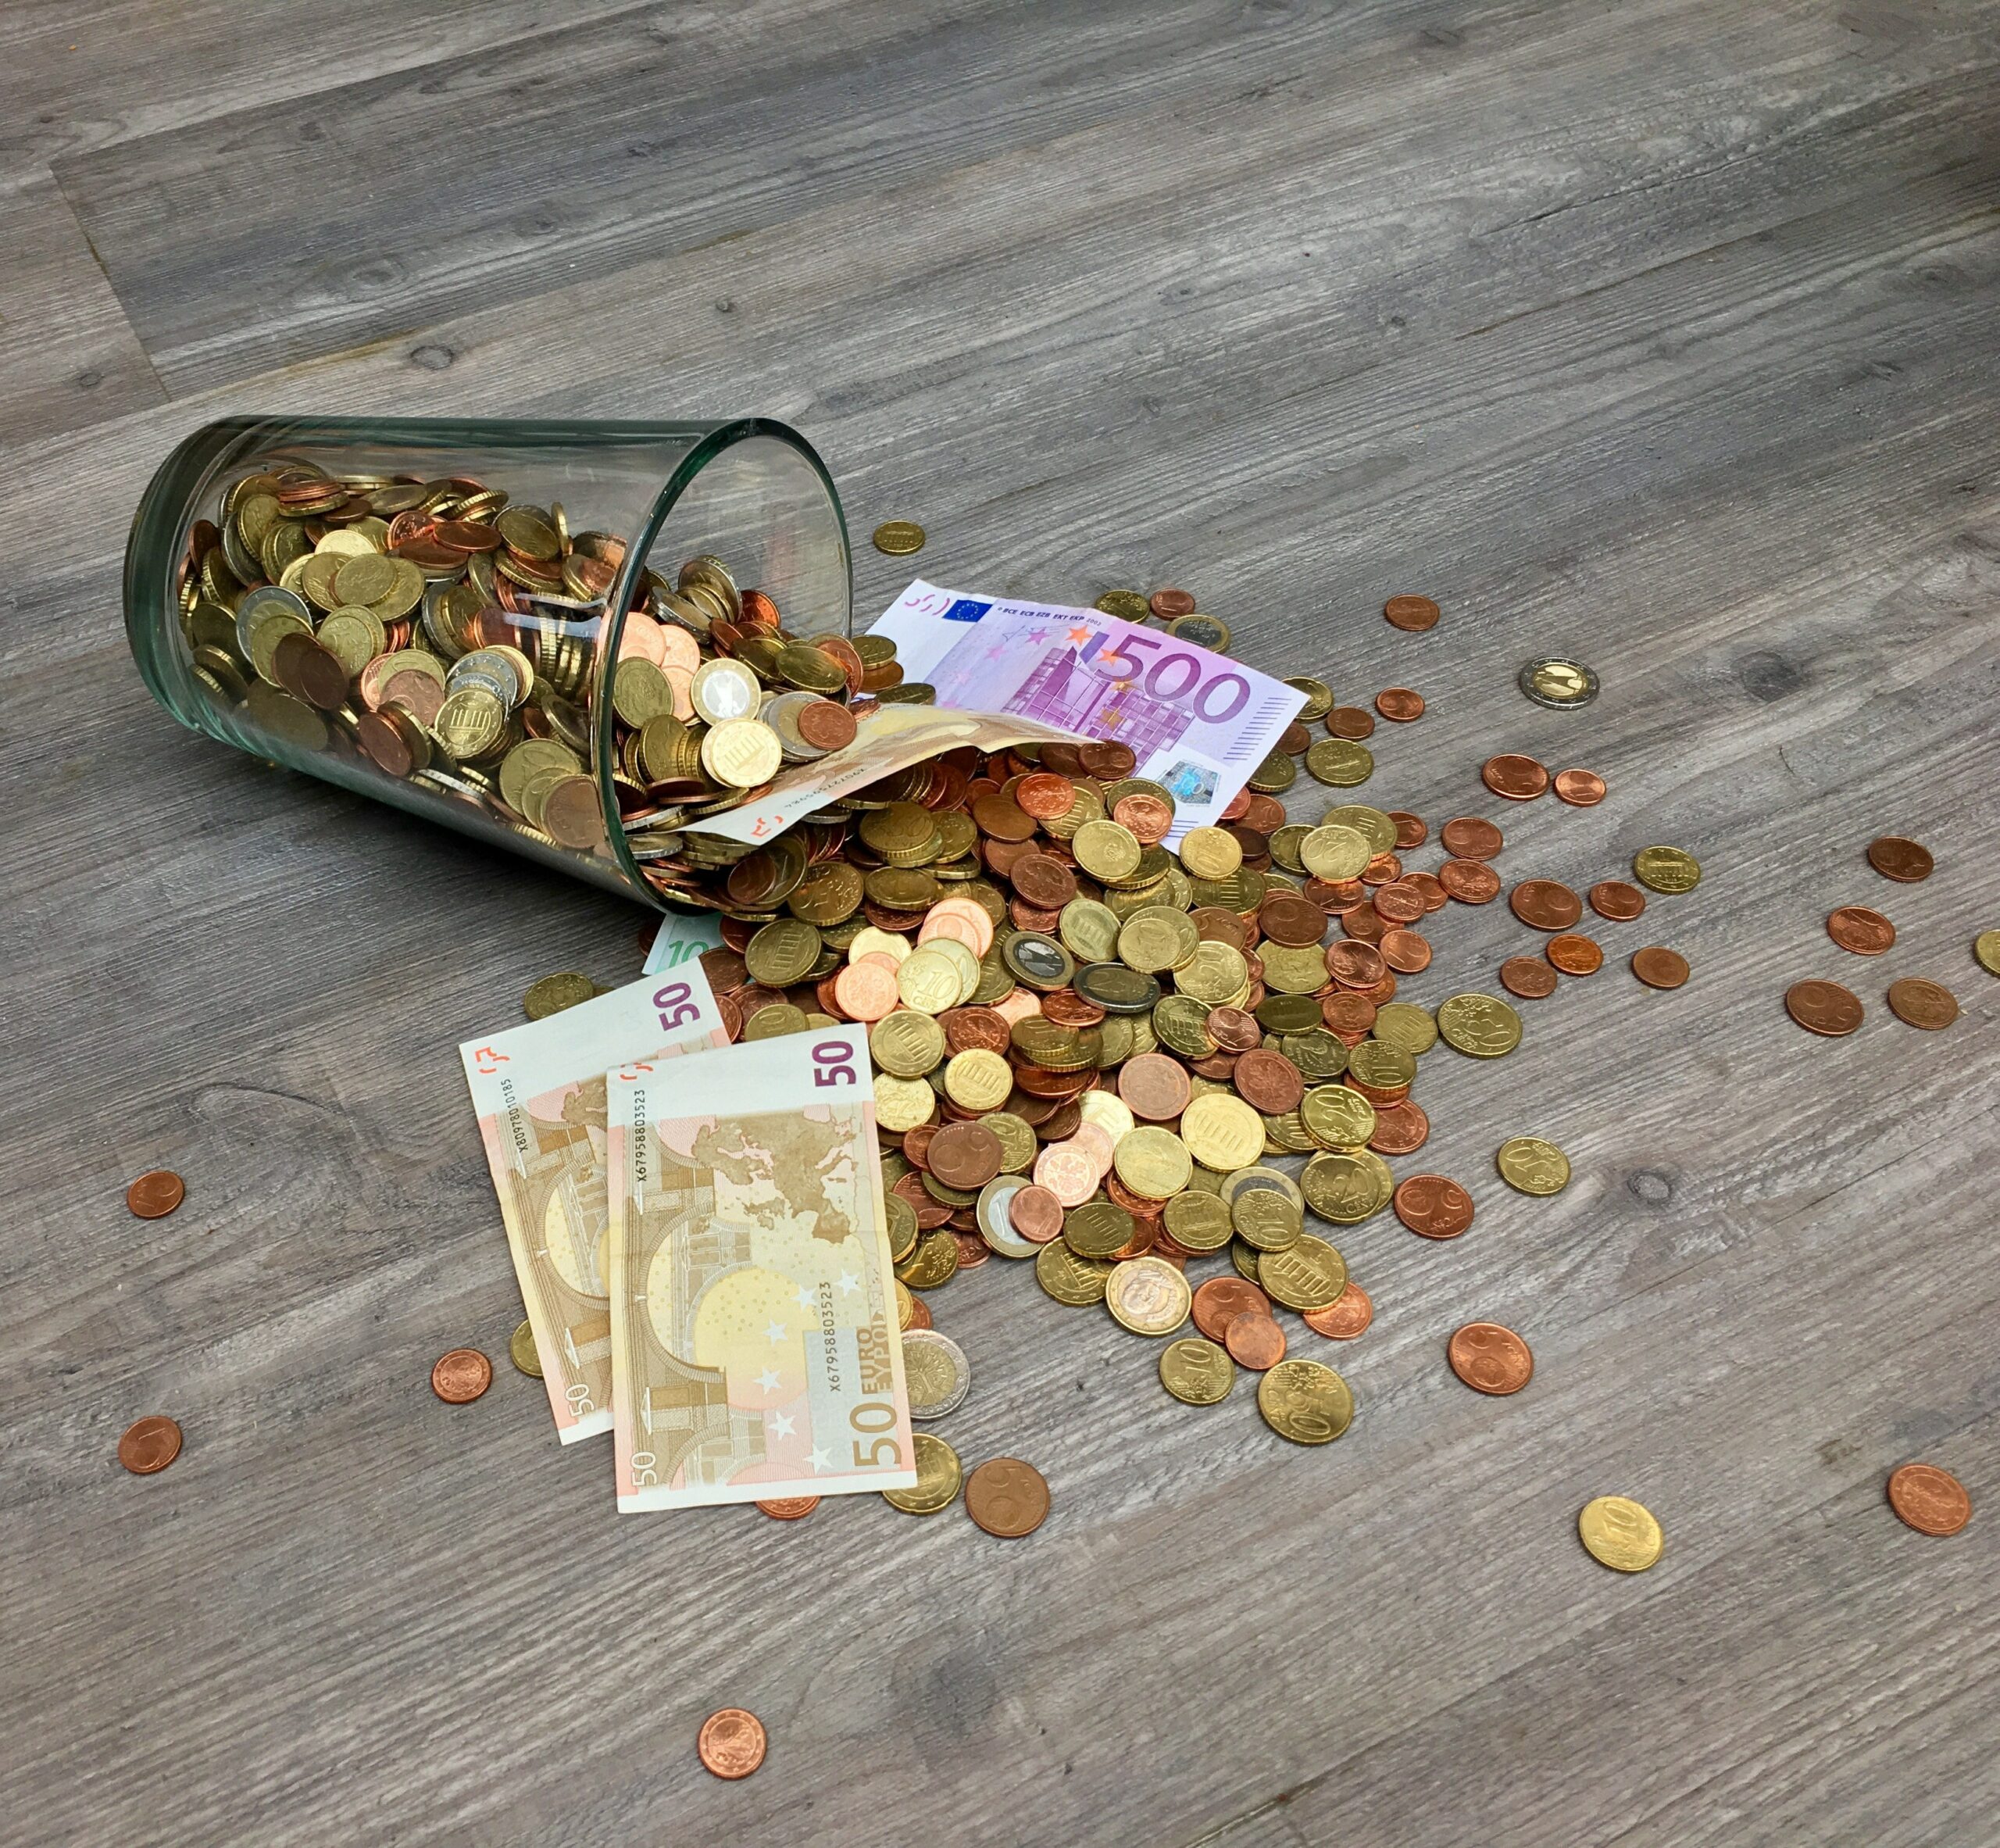 Auf der Seite liegendes mit Münzen gefülltes Glas mit drei 50 Euro Scheinen und einem 500 Euro Schein